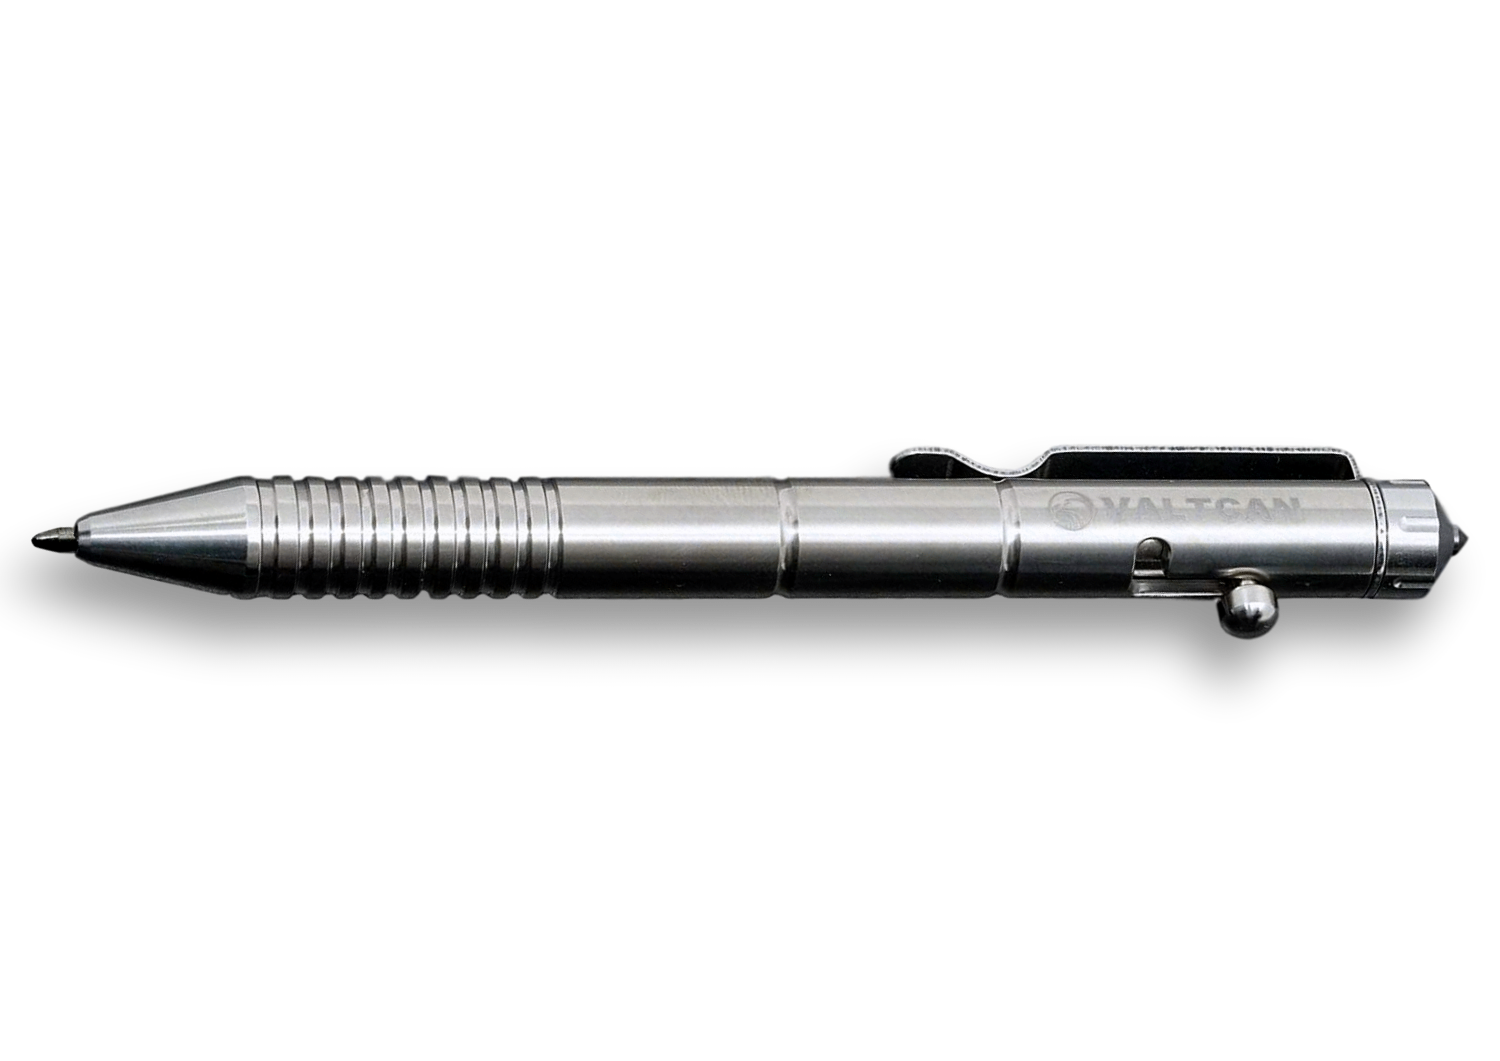 Valtcan Titanium Pen Gear Design for EDC